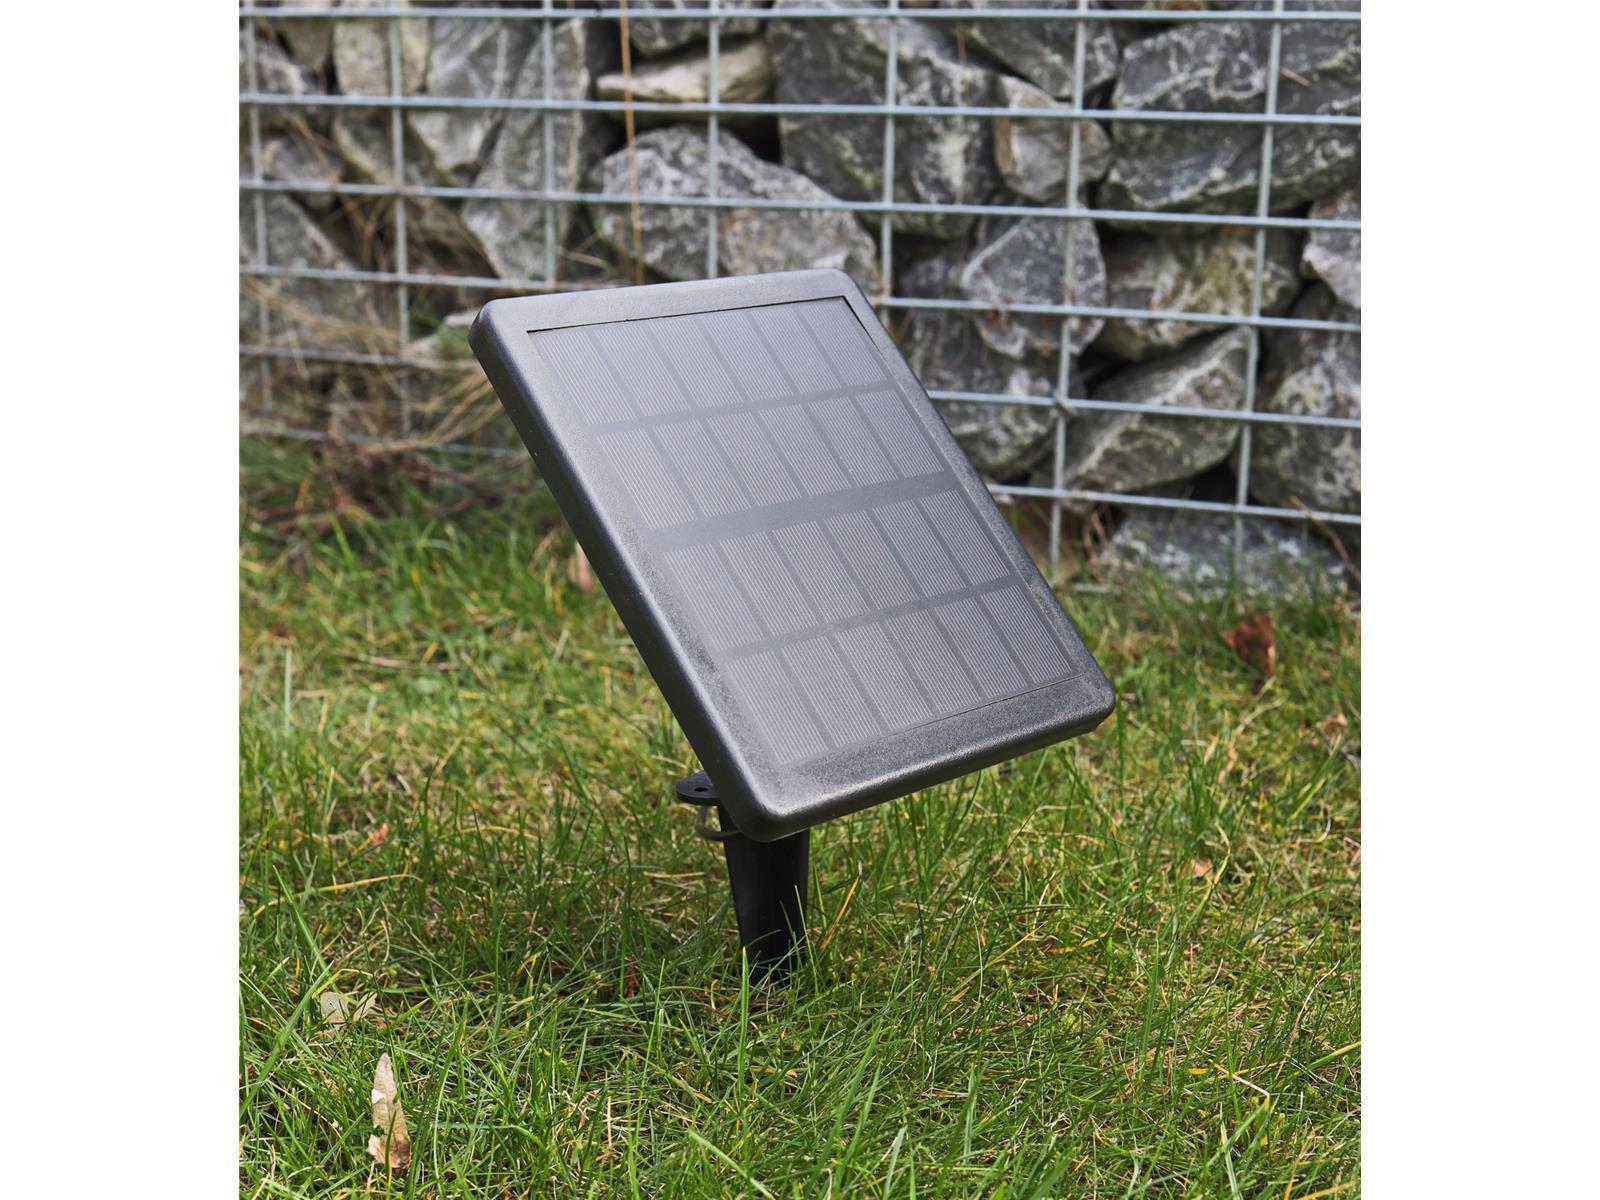 Gartenstrahler Set Solar mit 2 SpotsSolarzelle, Erdspieß, 3000k, IP65